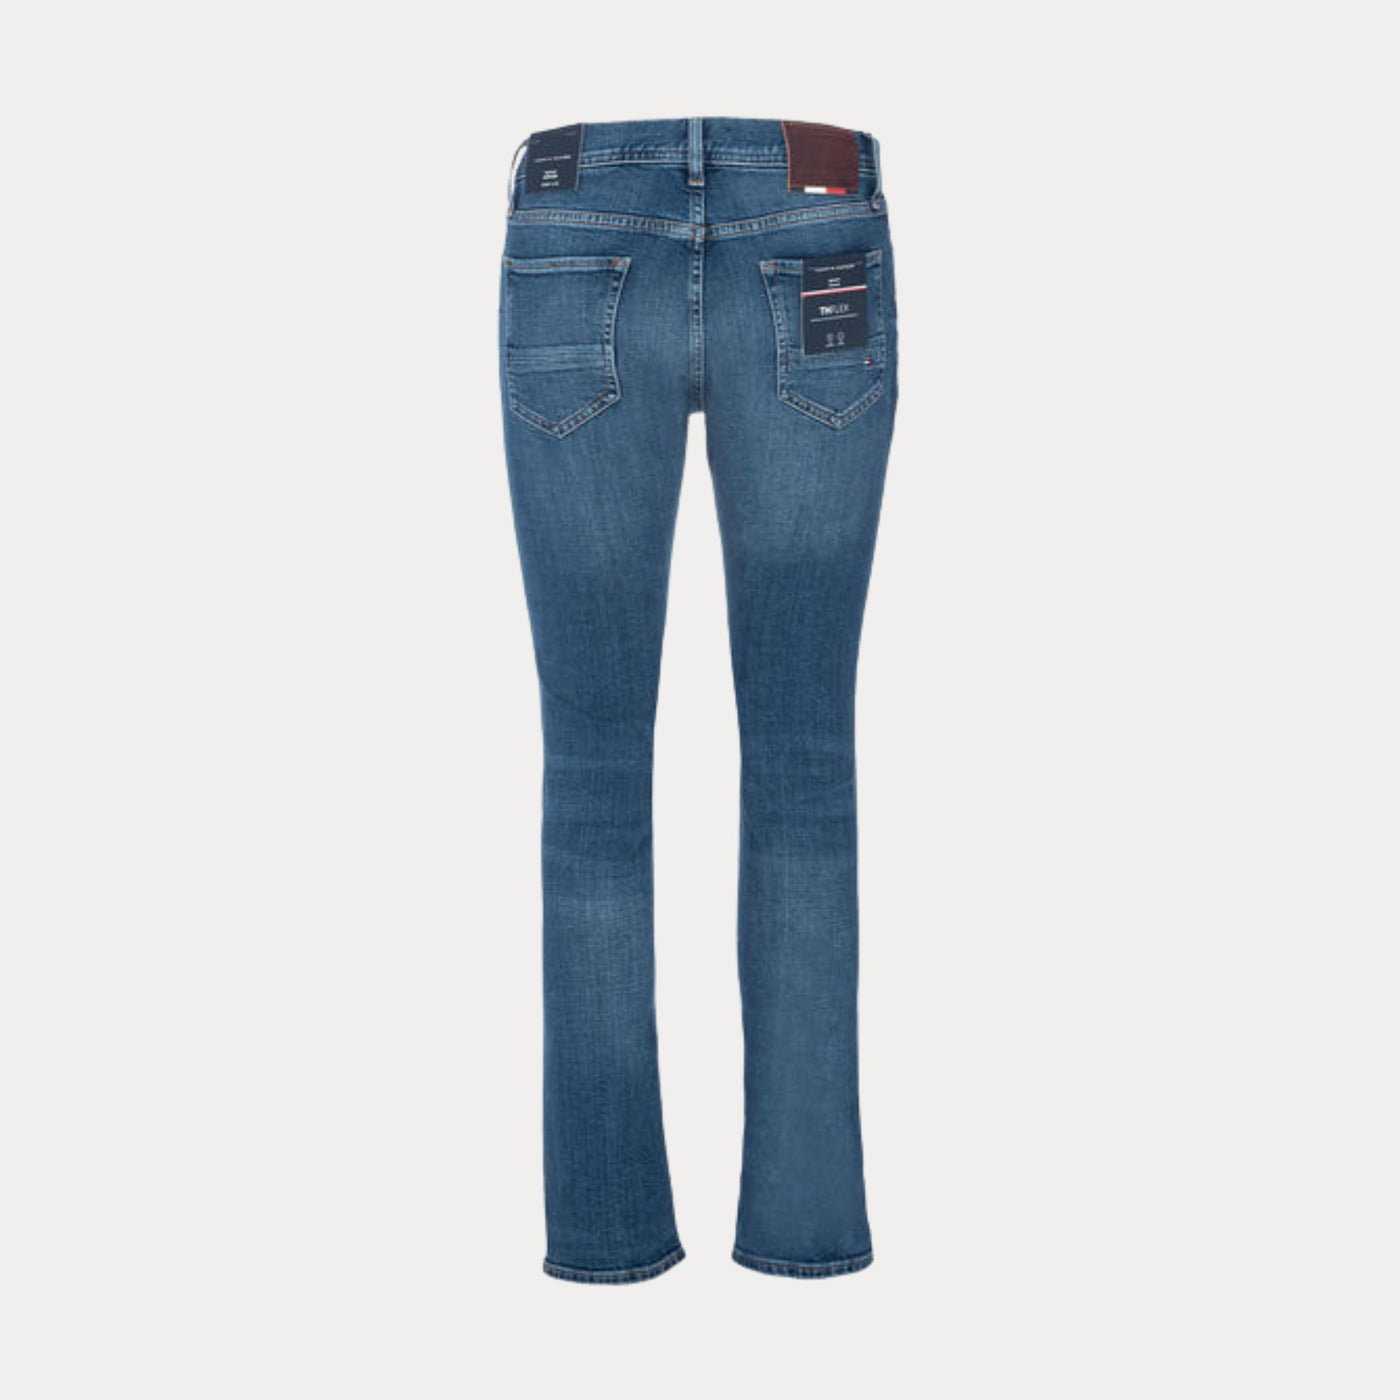 Jeans da uomo firmati Tommy Hilfiger con passanti cintura e lavaggio sbiadito sulle ginocchia. Visuale retro.